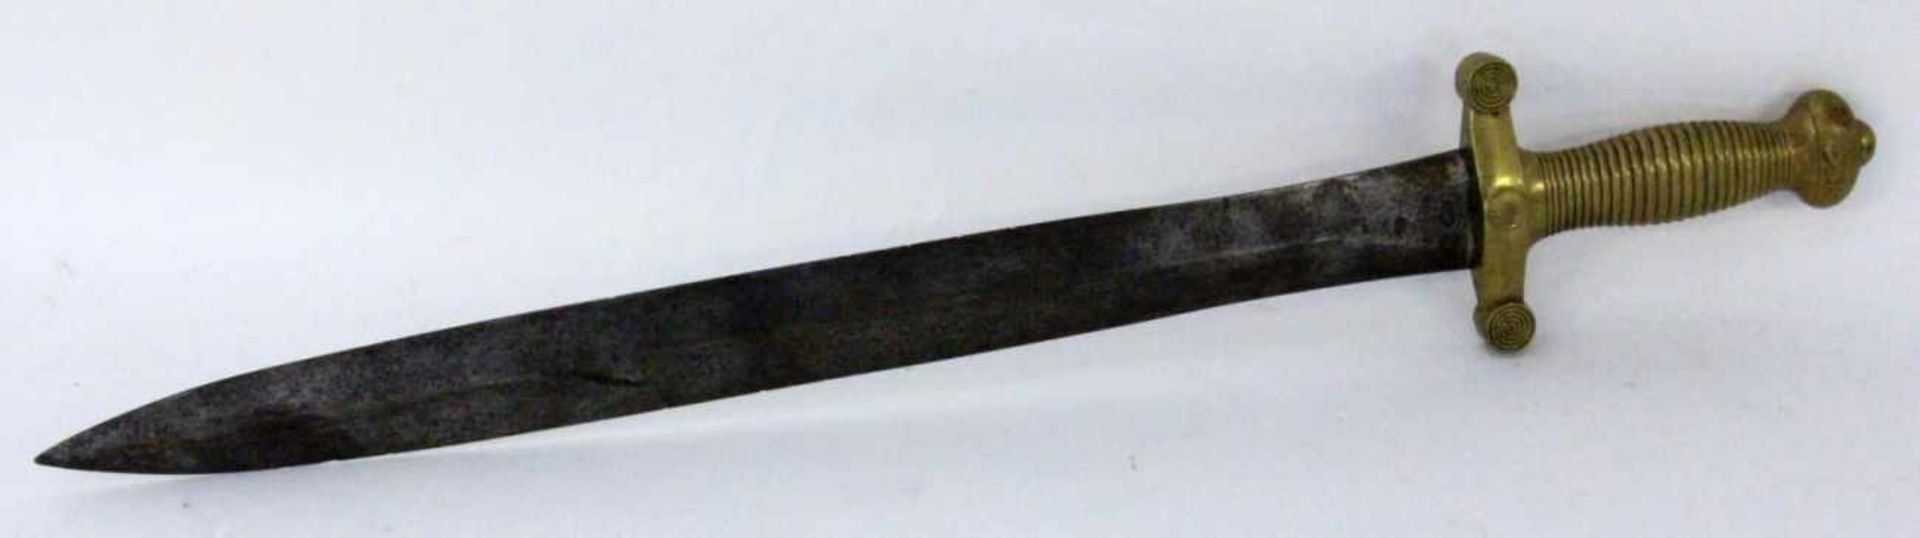 FRANZÖSISCHES FASCHINENMESSER Talabot, Paris um 1830 Messinggriff, 2-schneidige Stahlklinge. Marken. - Image 2 of 2